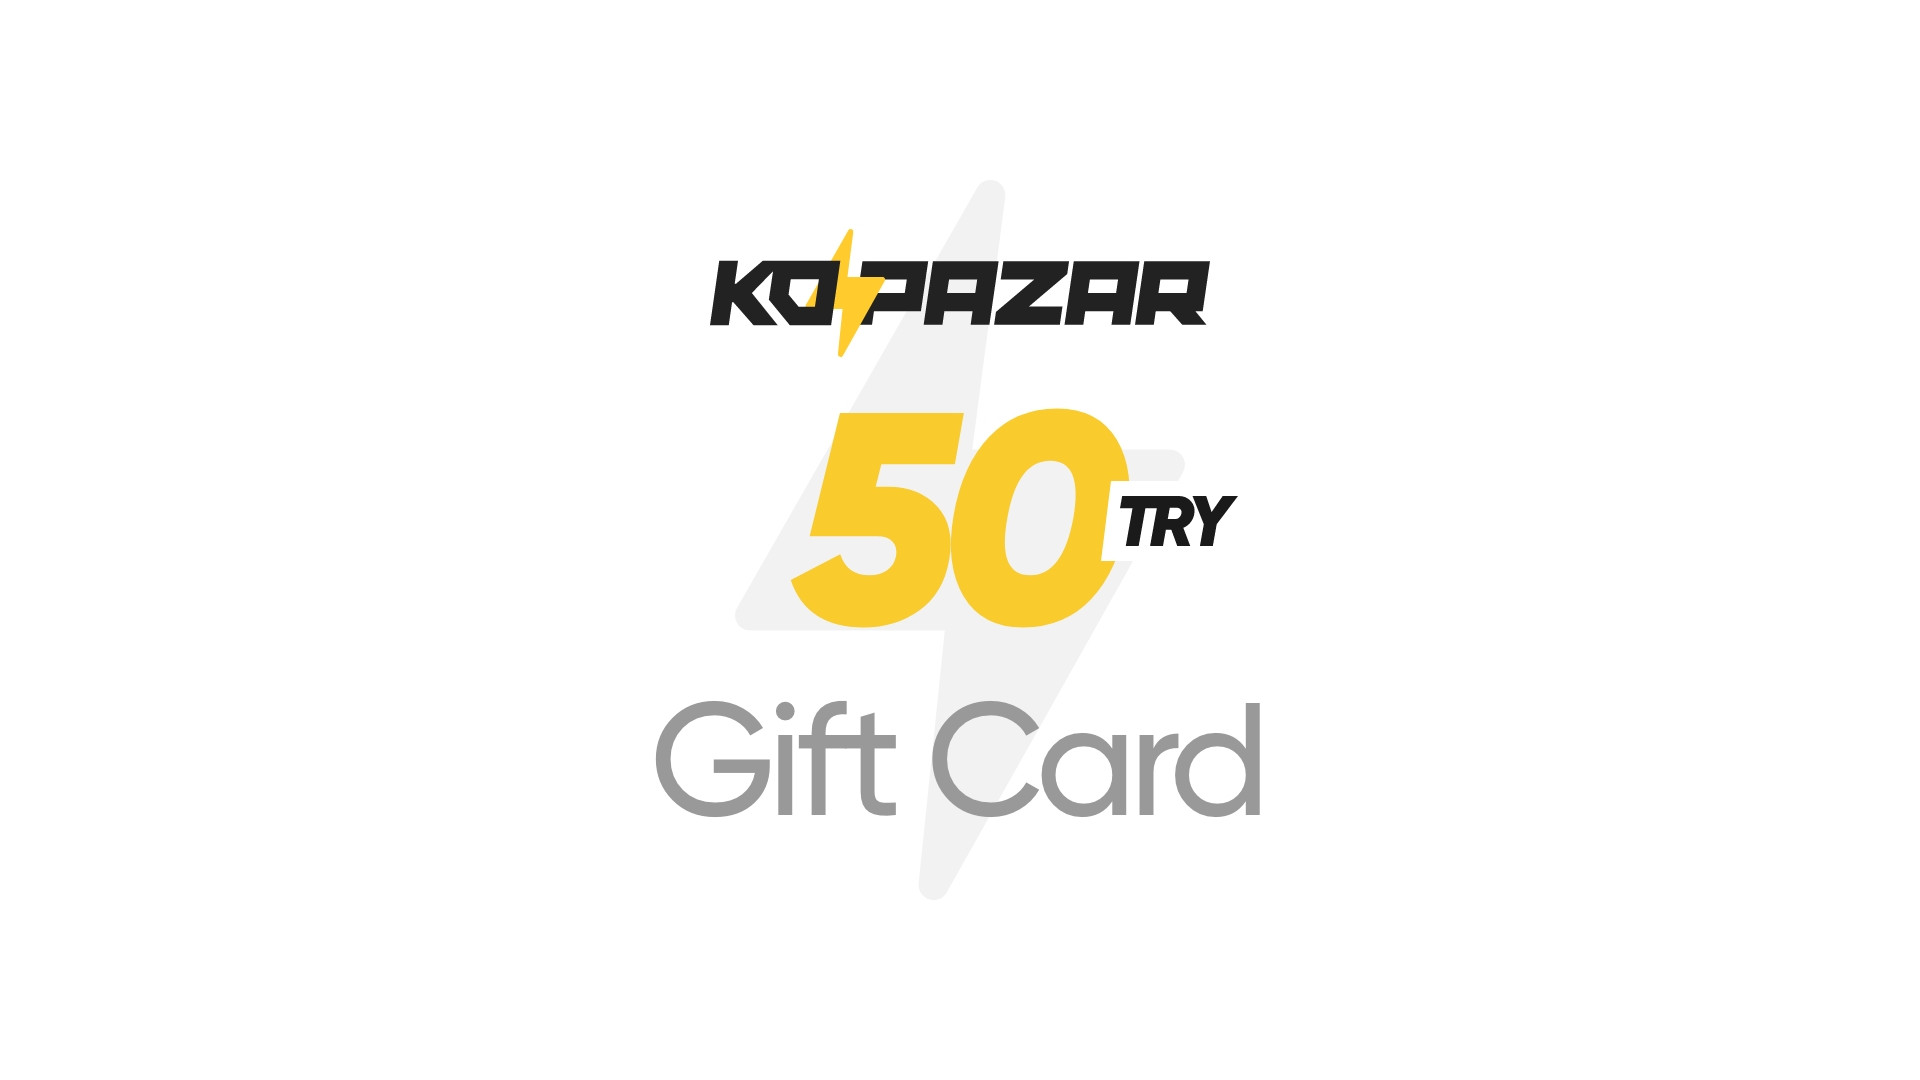 Kopazar 50 TRY Gift Card $2.09